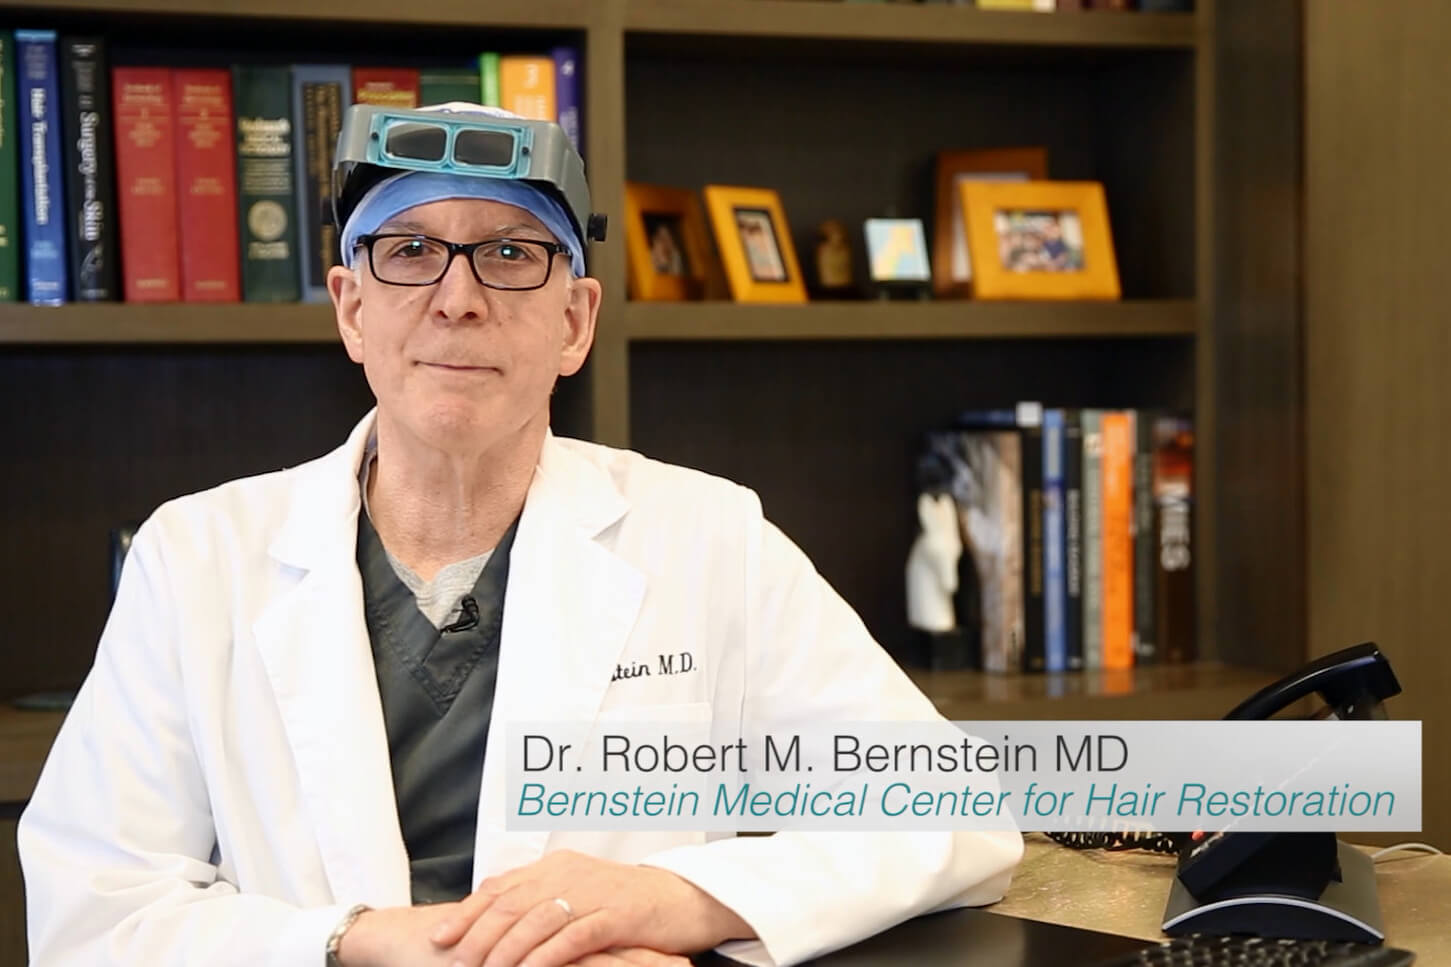 Bernstein Medical Hair Restoration Videos - Bernstein Medical: About Our Practice in NYC